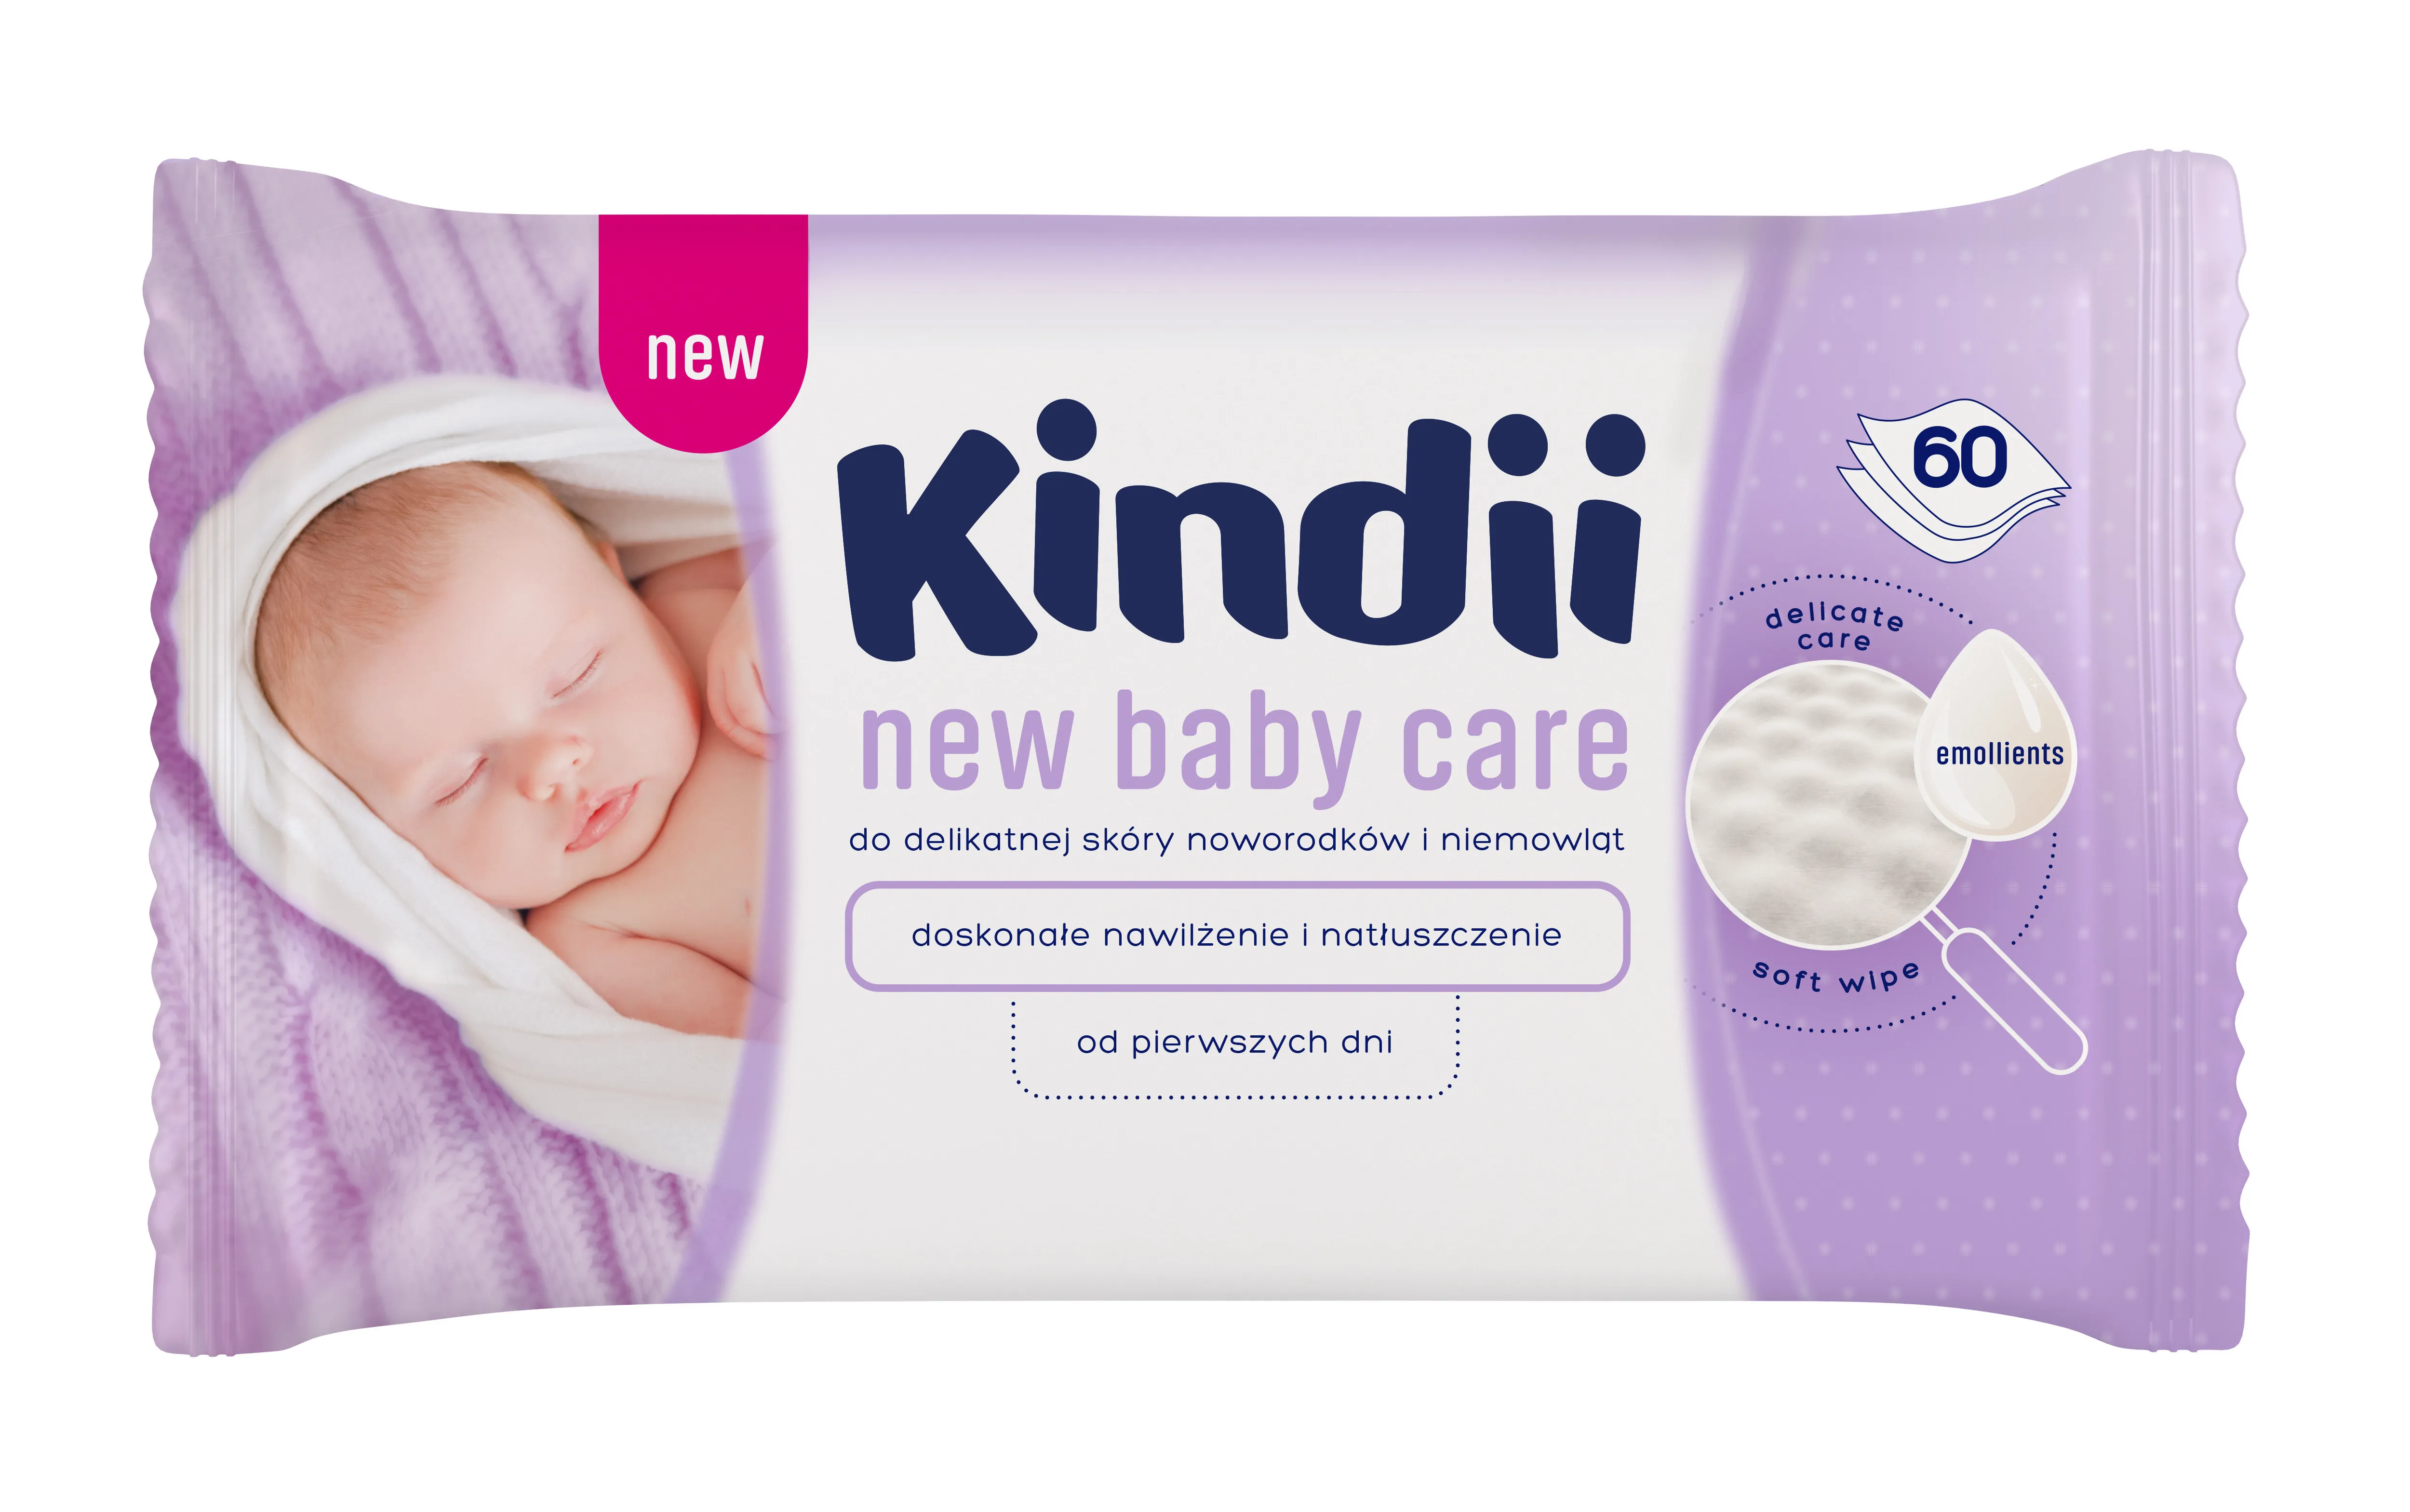 Kindii New Baby Care, chusteczki dla niemowląt do skóry delikatnej, 60 sztuk